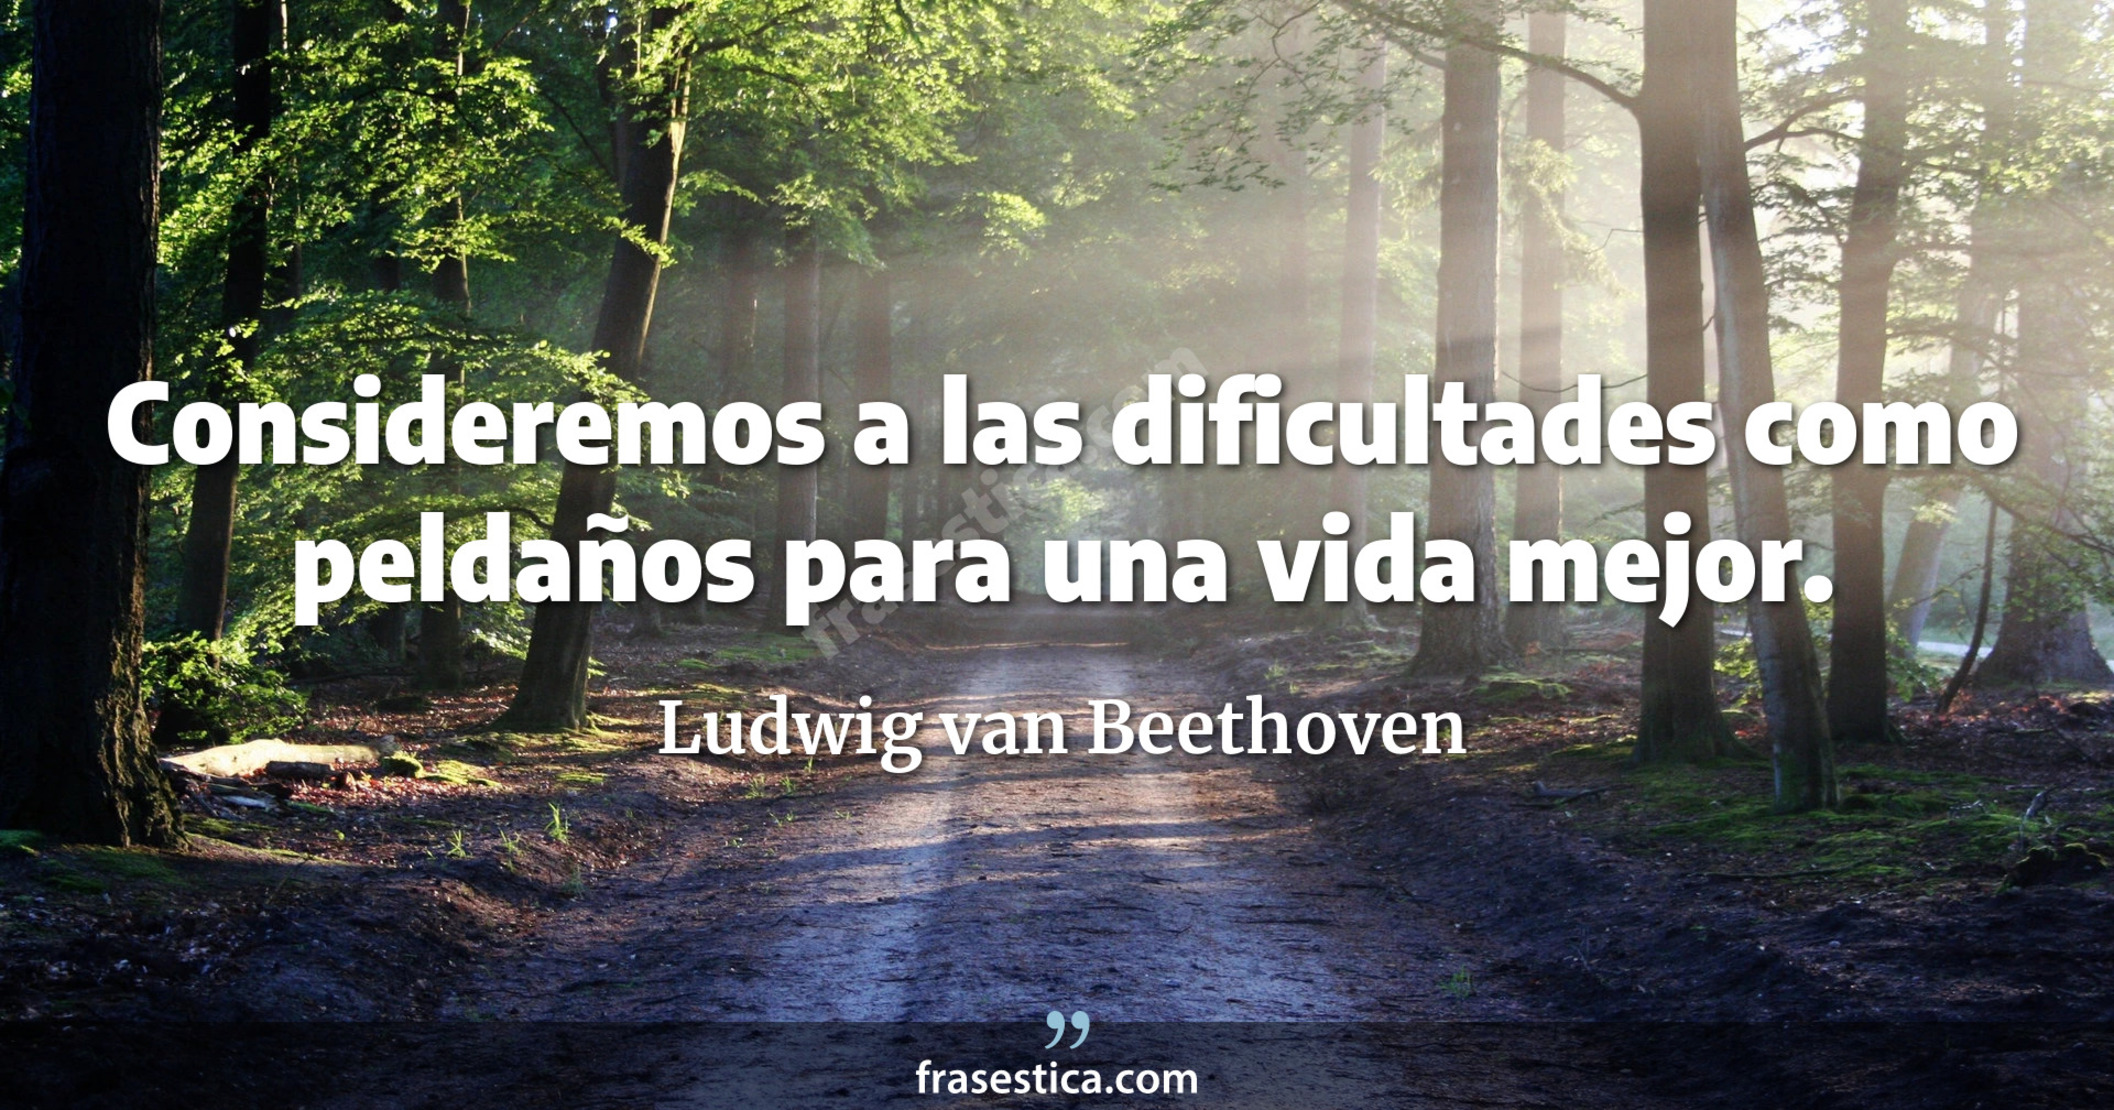 Consideremos a las dificultades como peldaños para una vida mejor. - Ludwig van Beethoven